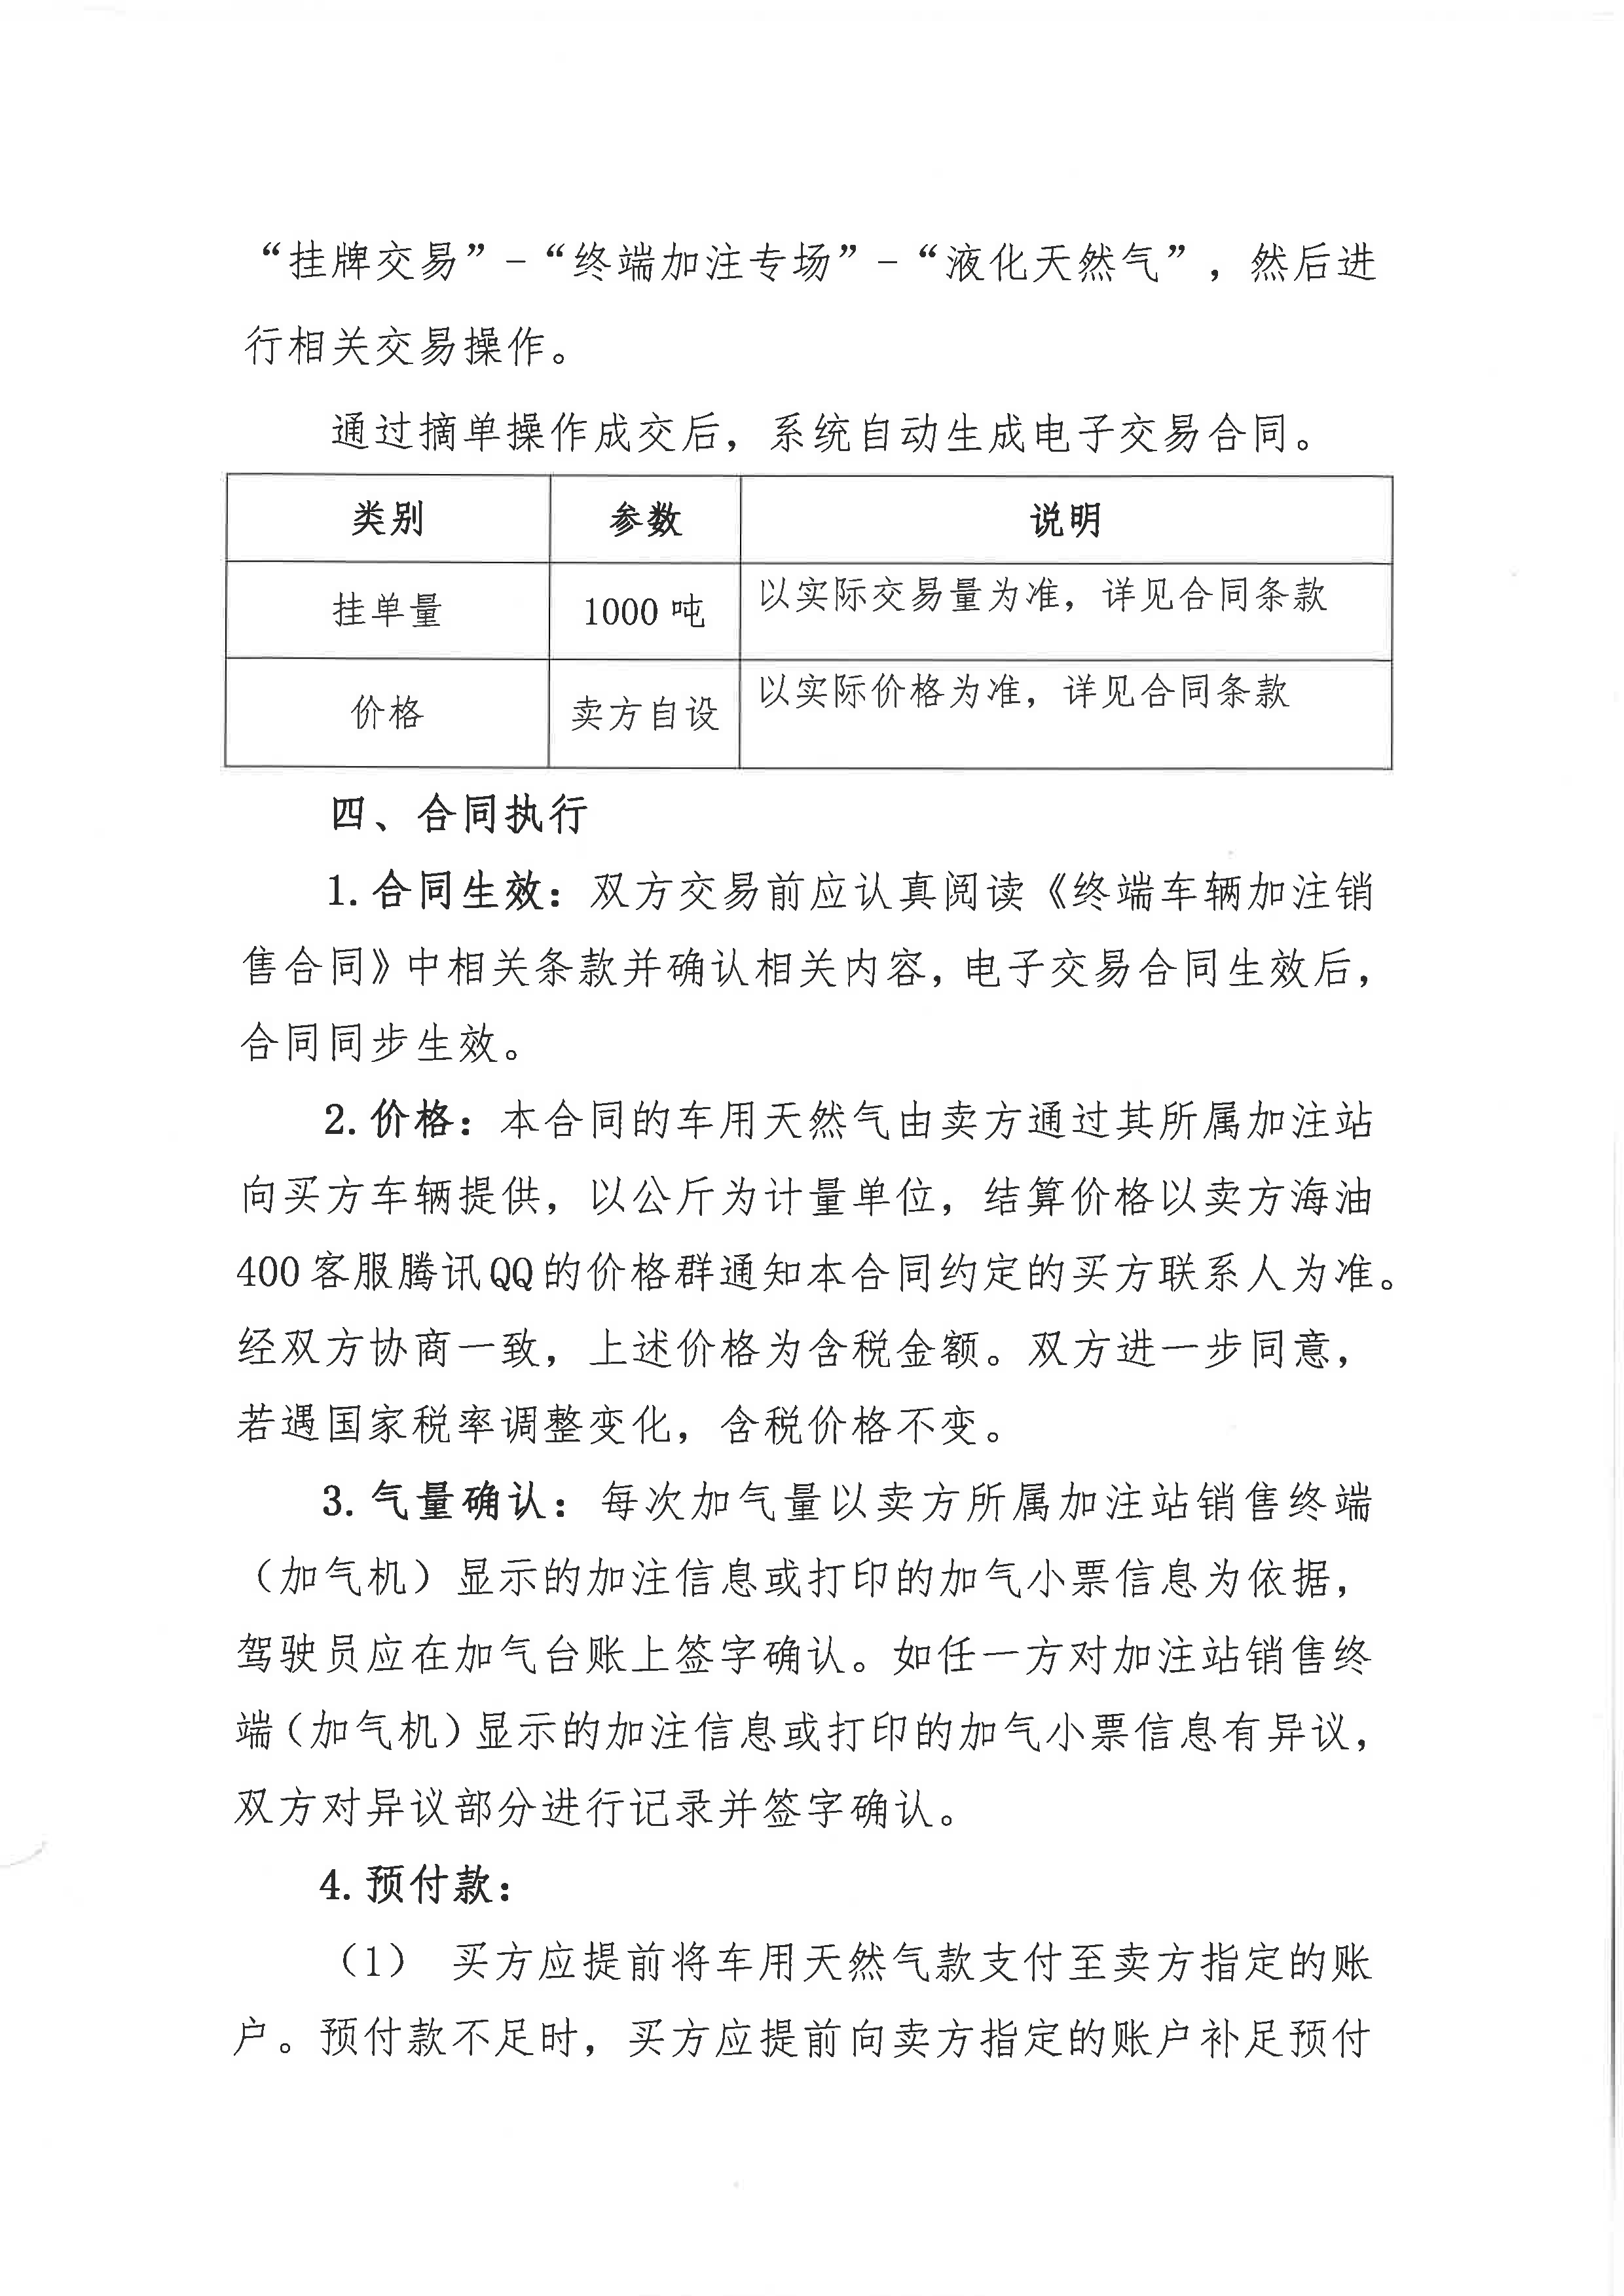 中海石油气电集团浙江分公司关于终端车辆加注合同线上签署的公告_页面_2.png